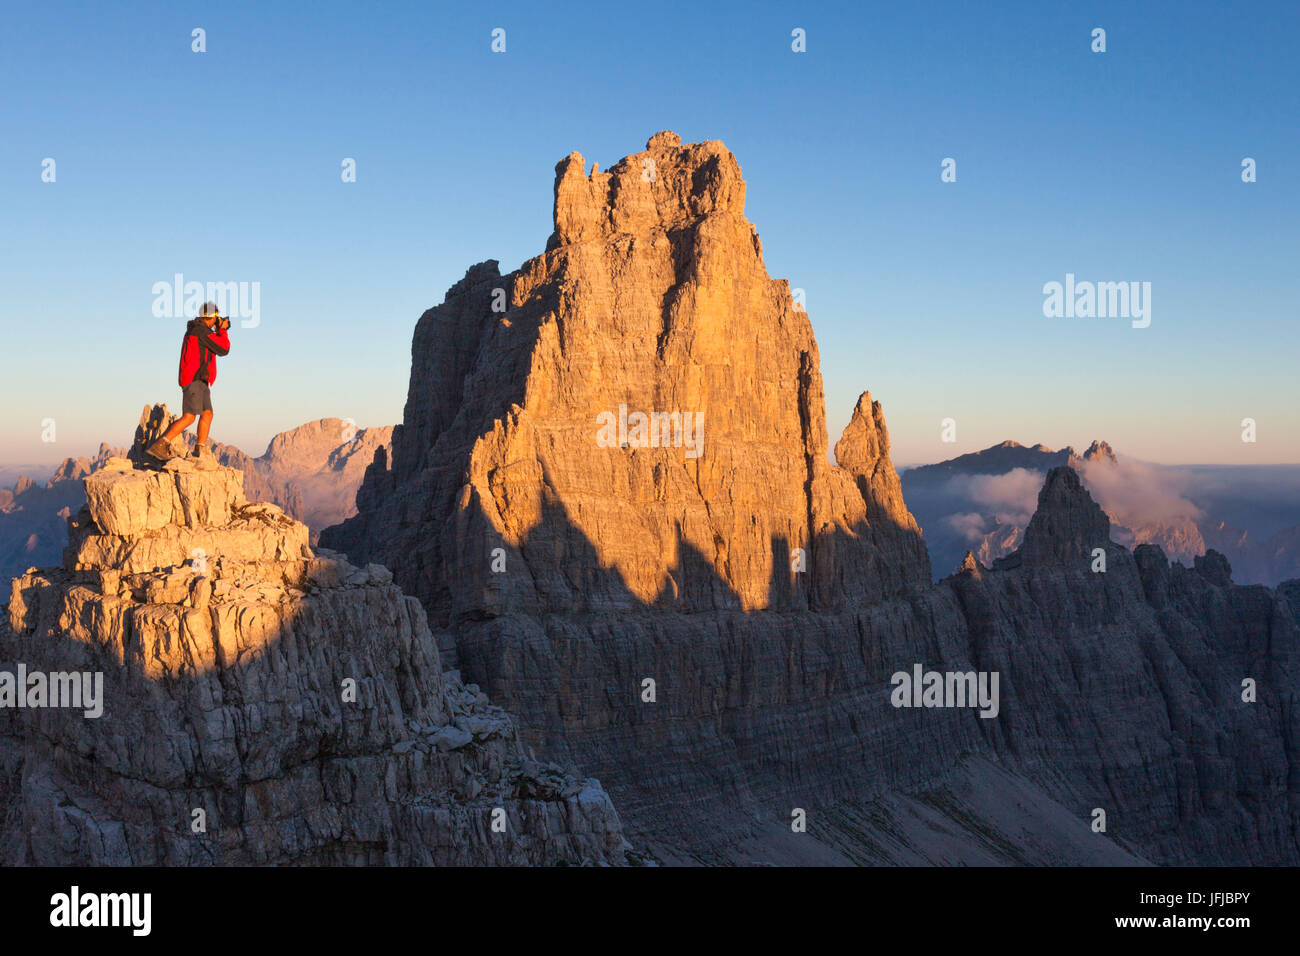 Europa, Italien, Friaul, Pordenone, Fotograf vor der Croda Cimoliana in den Friauler Dolomiten Stockfoto